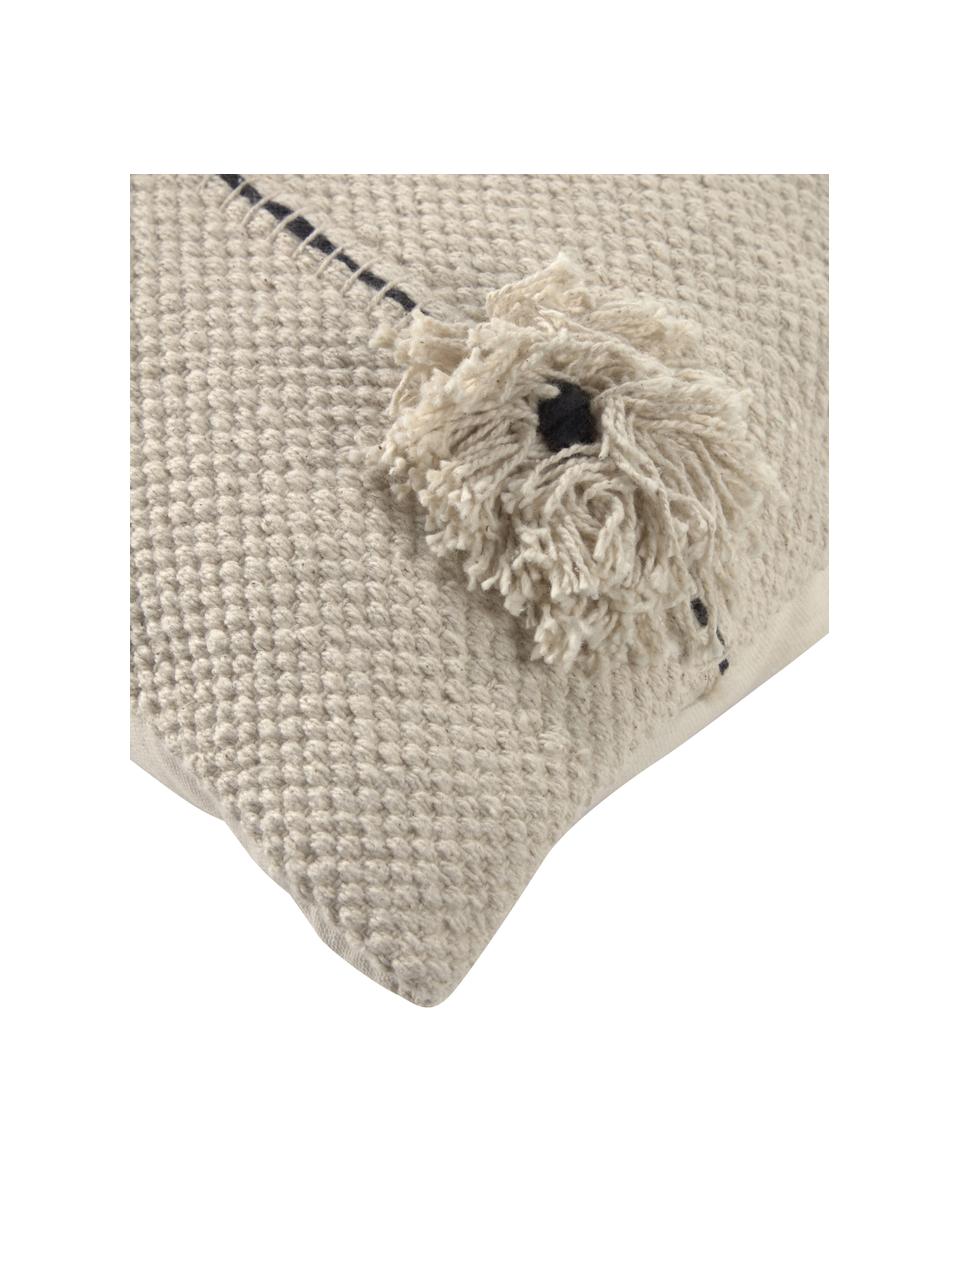 Kissenhülle Belisa mit Struktur-Oberfläche und dekorativen Quasten, 100% Baumwolle, Beige, 45 x 45 cm